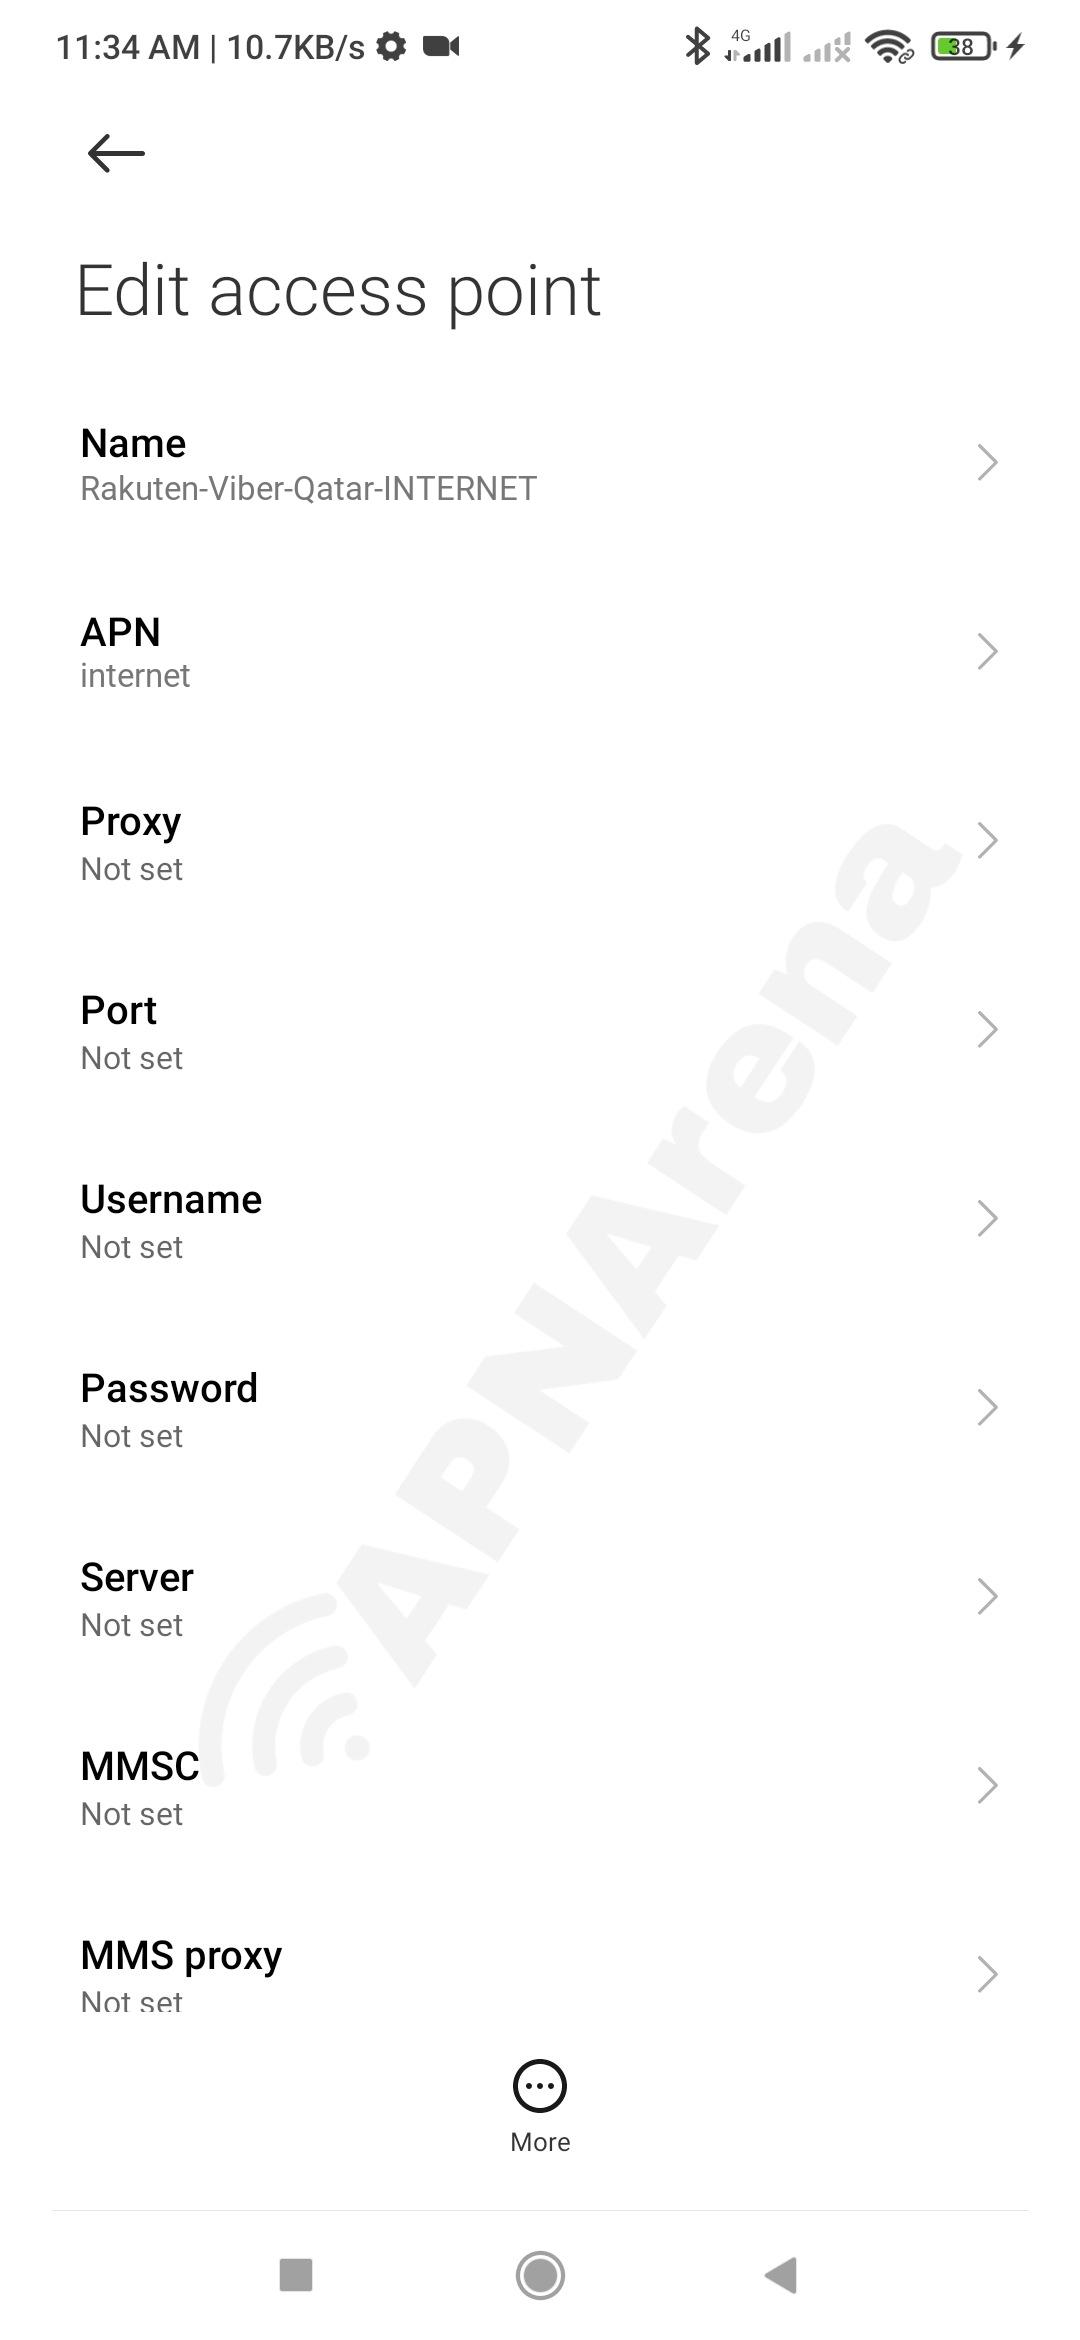 Rakuten Viber Qatar APN Settings for Android